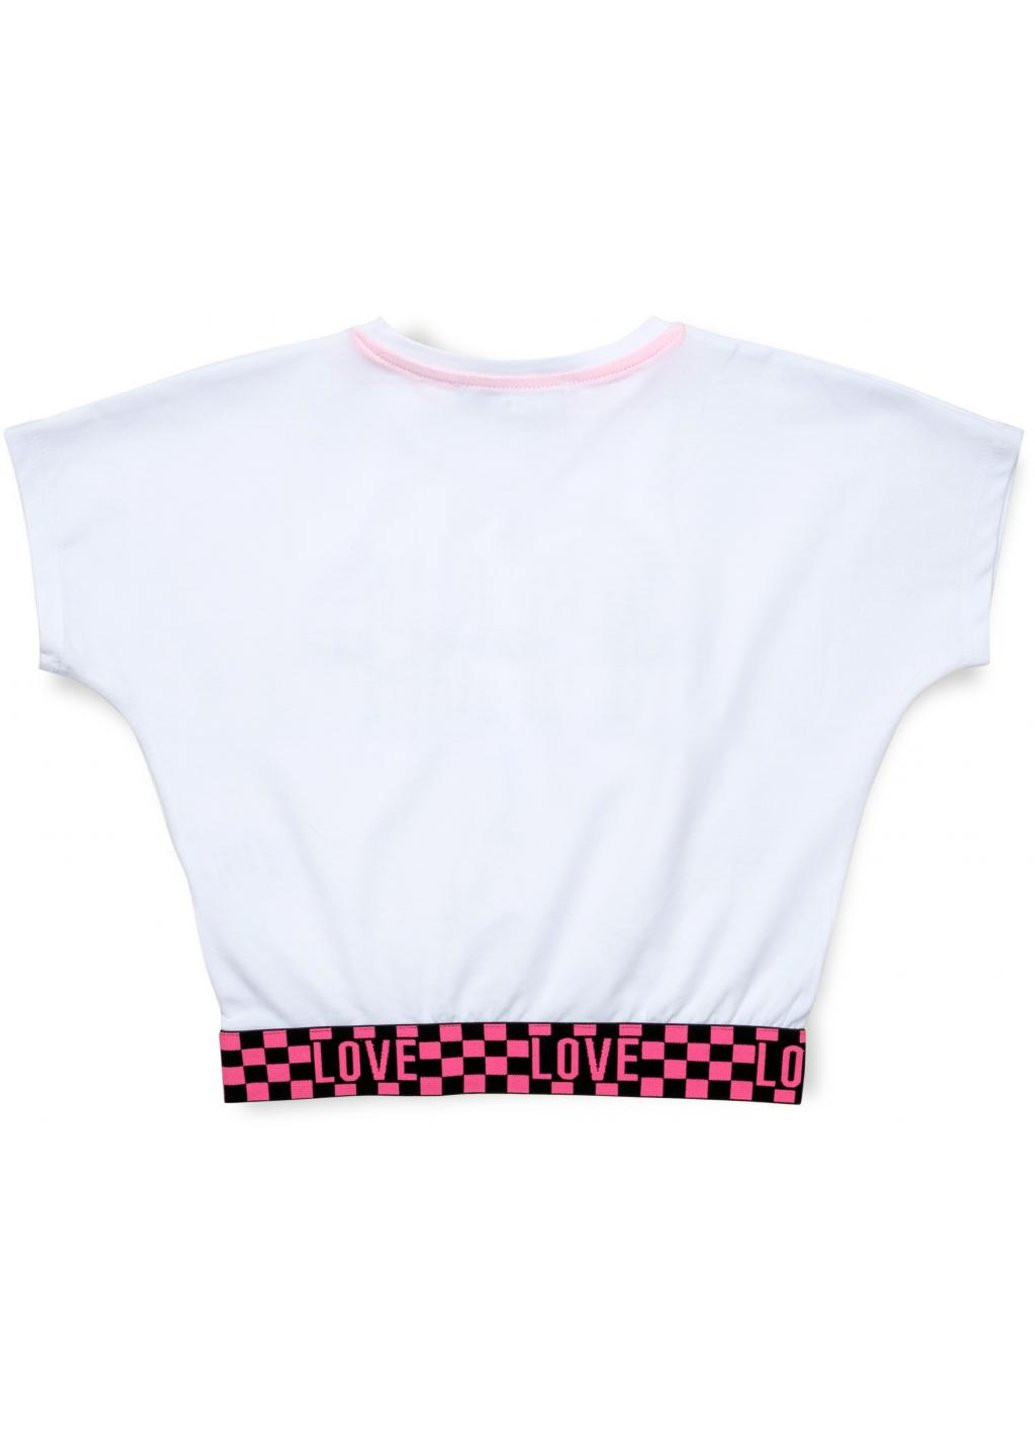 Комбинированная футболка детская укороченная (4114-146-white) A-yugi